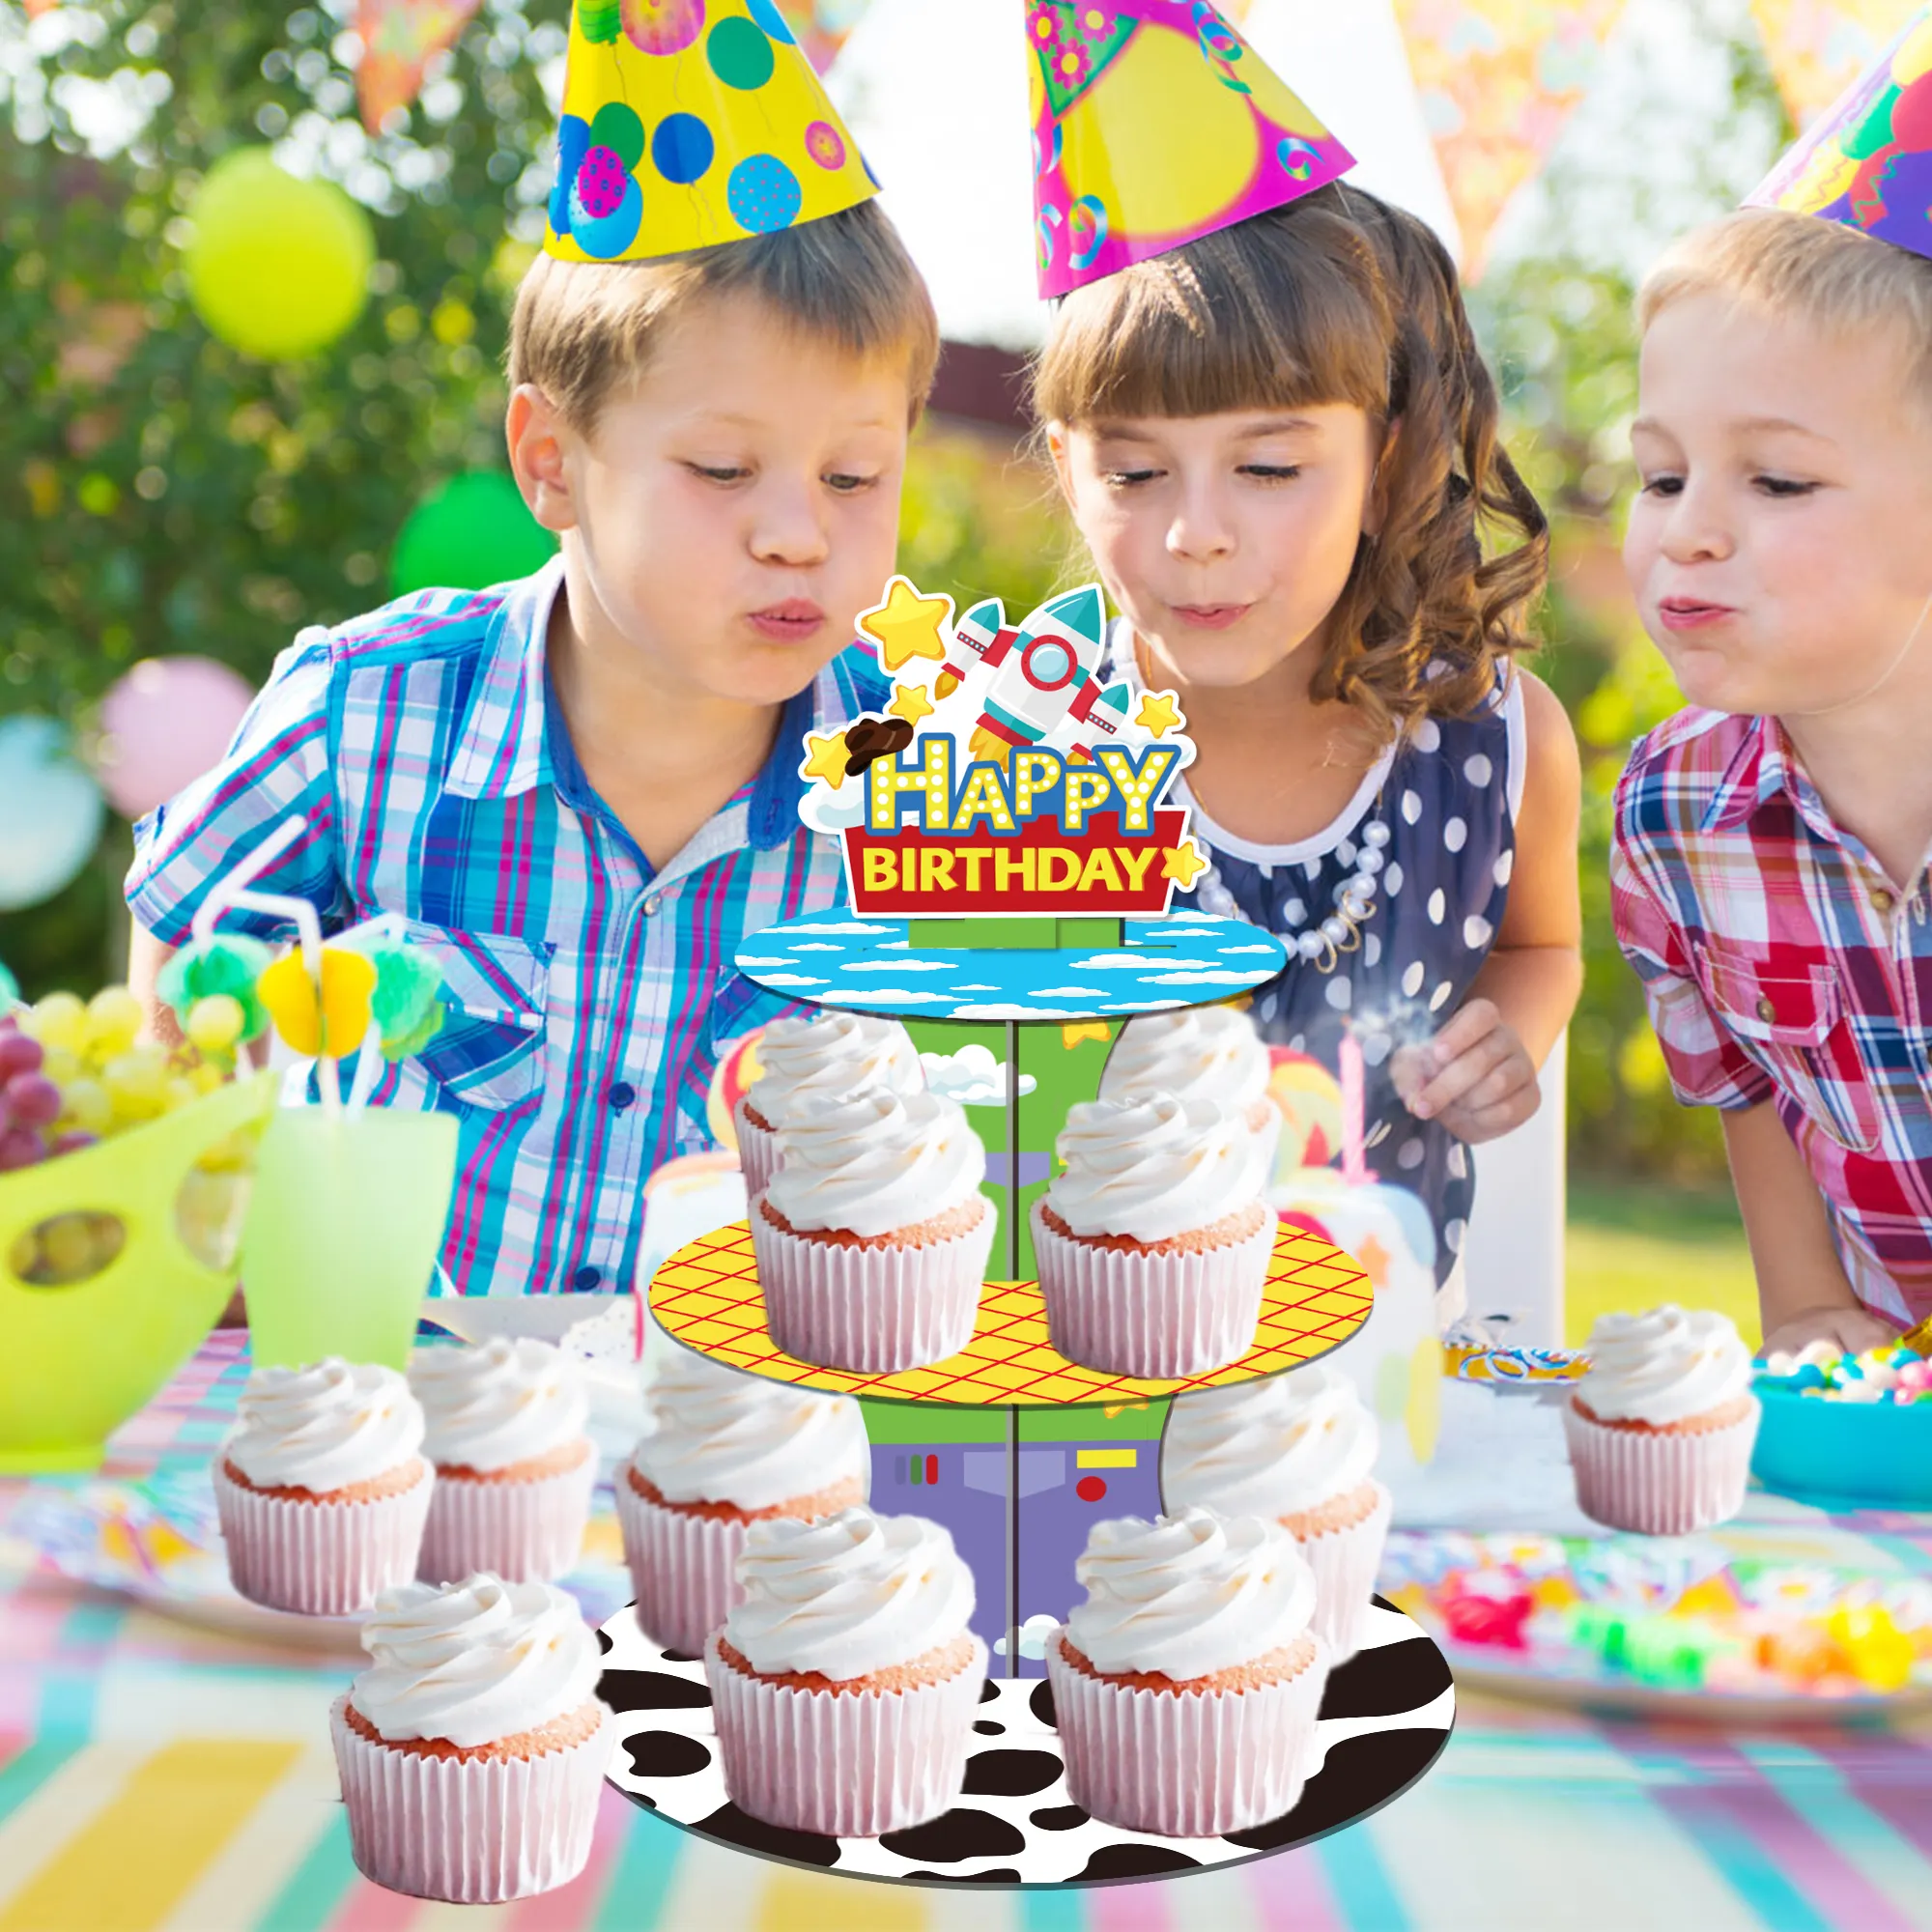 DT092 oyuncak Inspired hikaye parti fincan kek standı parti süslemeleri 3 katmanlı kek standı tutucu çocuklar için oyuncak oyun hikayesi parti malzemeleri